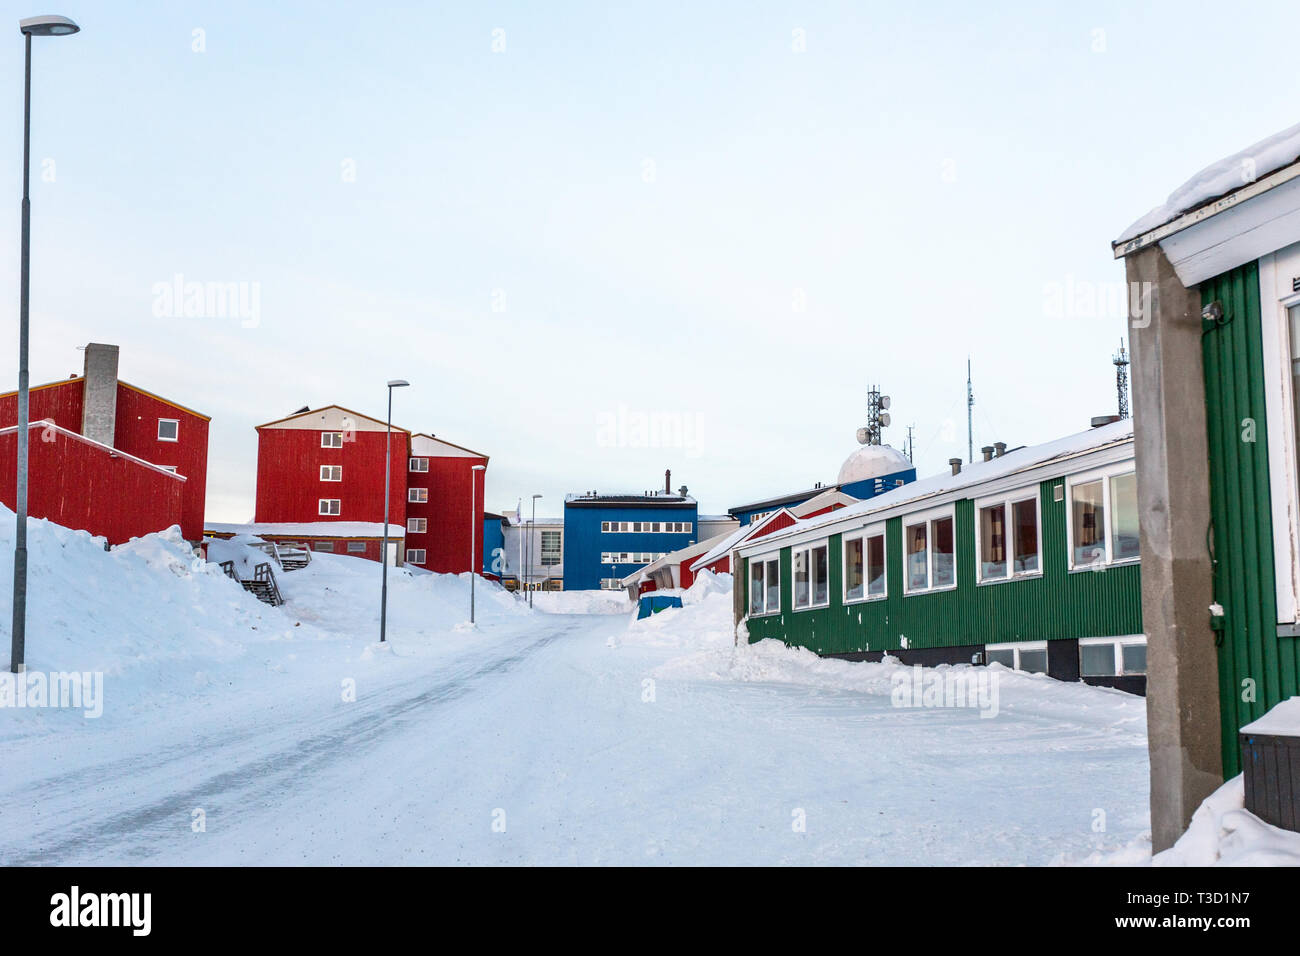 Groenlandese strada coperta di neve con i suoi edifici colorati, Nuuk city centre, Groenlandia Foto Stock